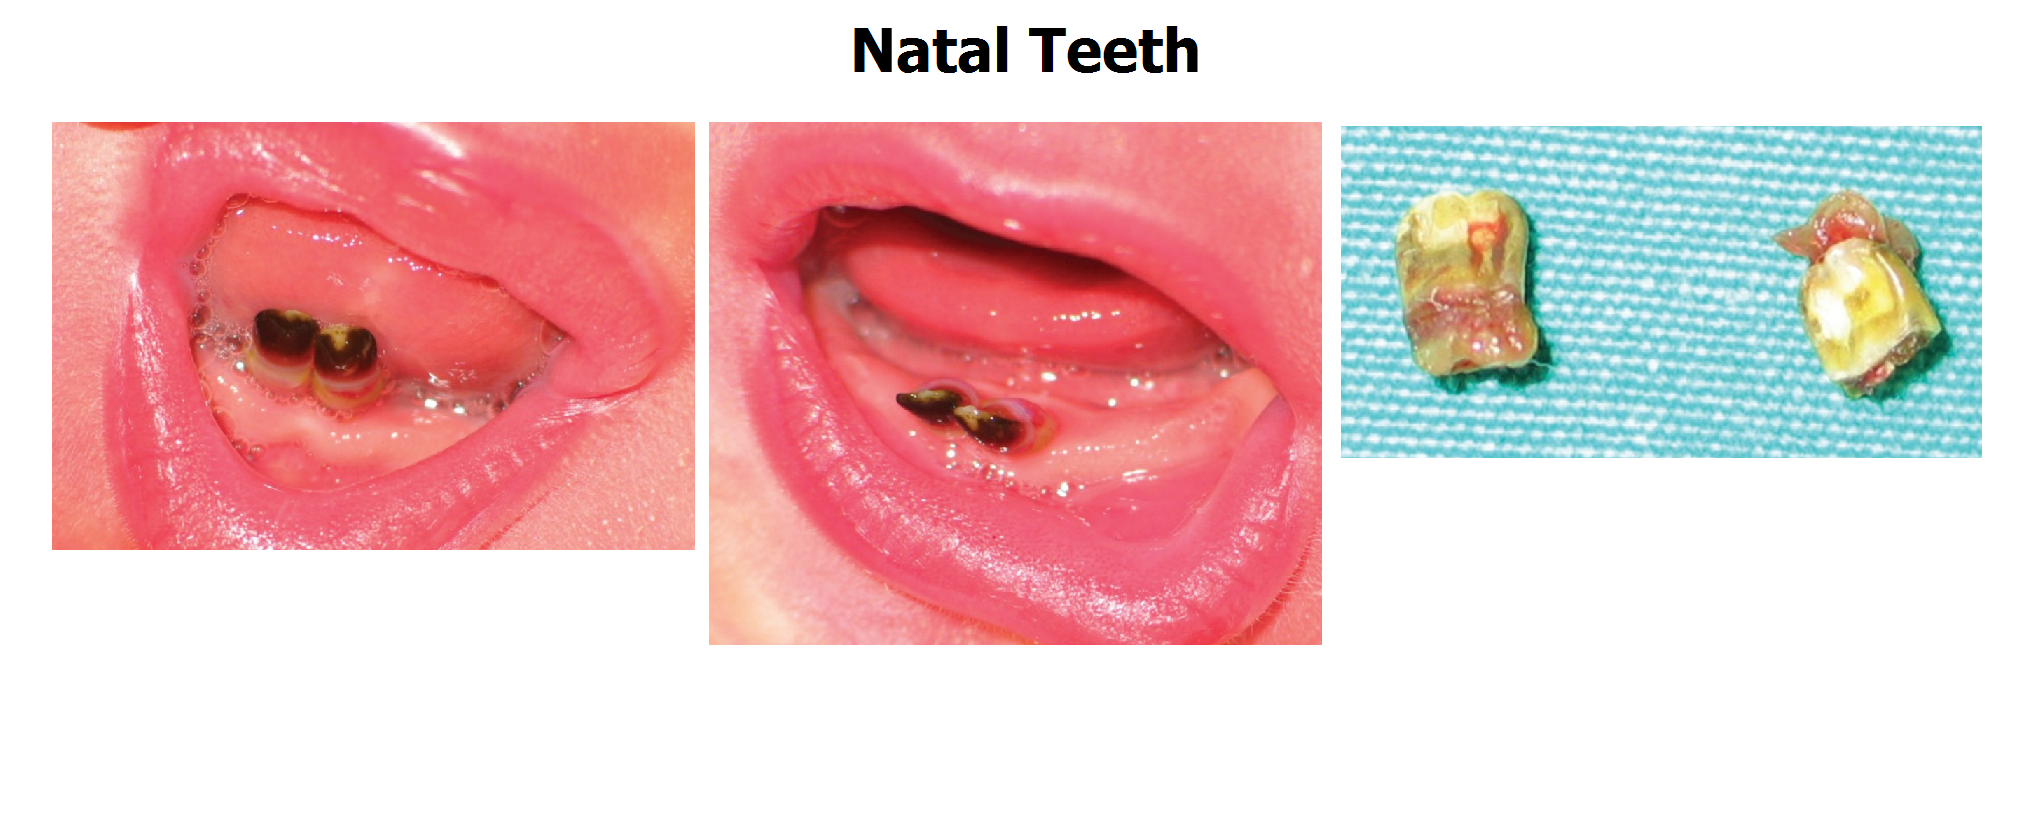 natal teeth #11